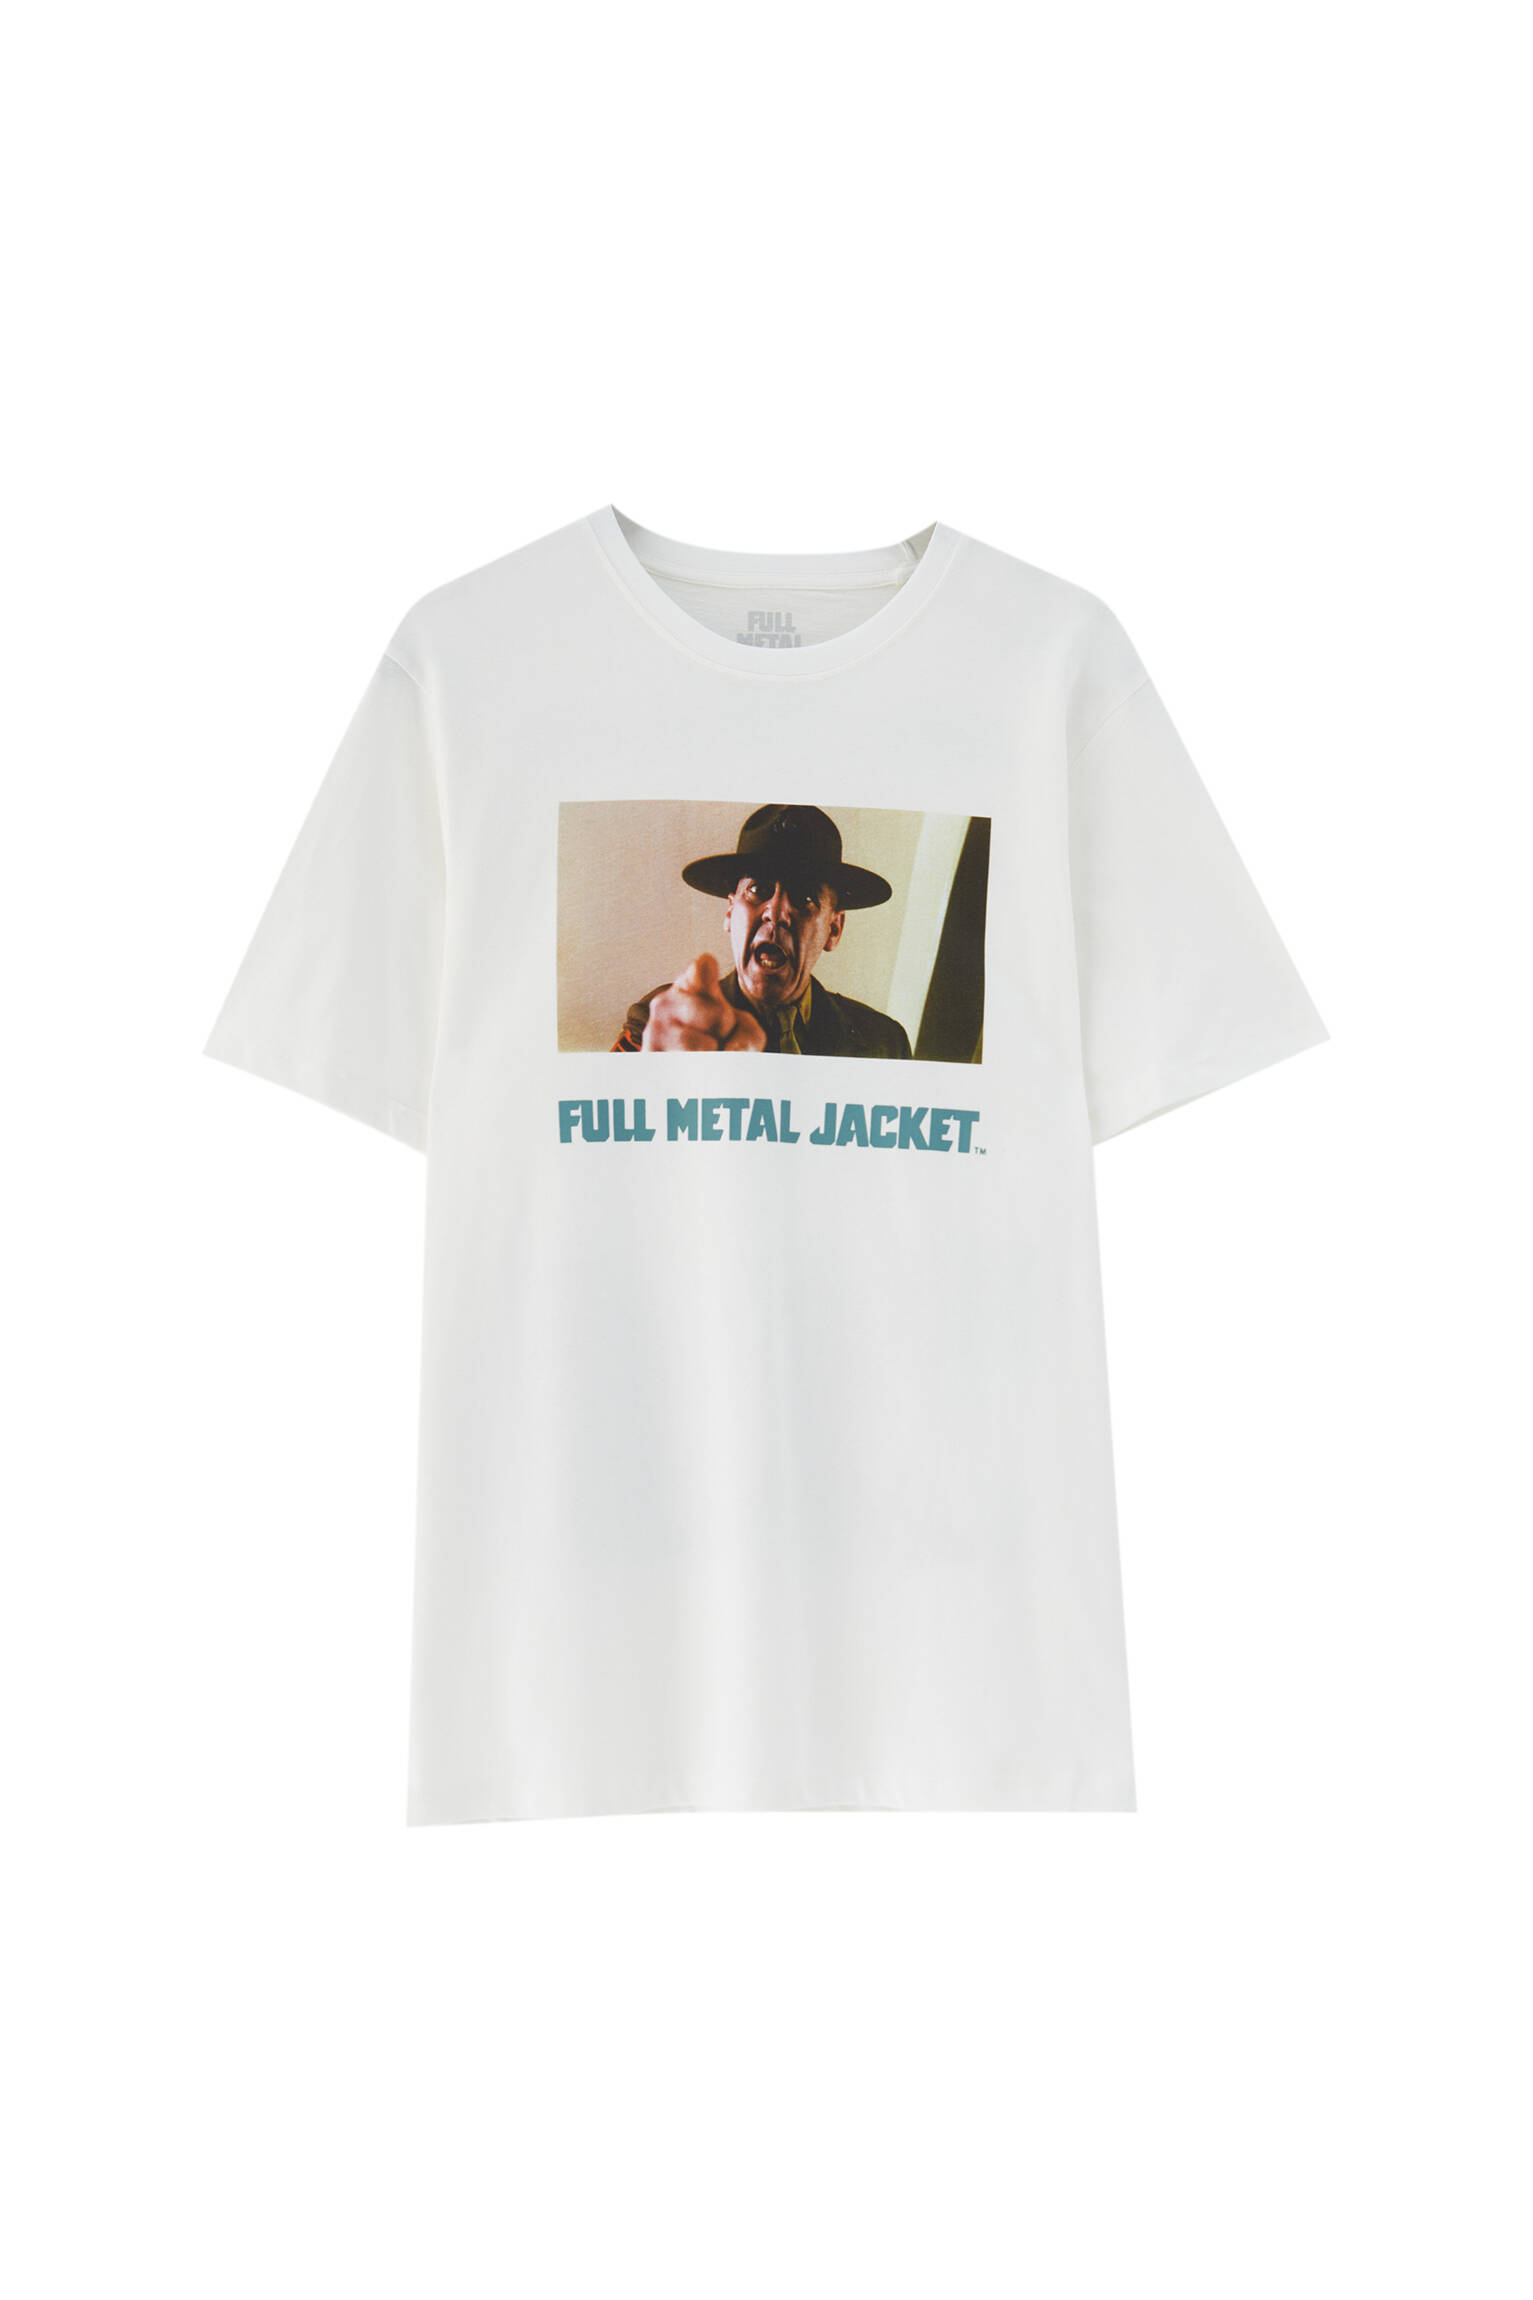 Pull&bear Homme T-shirt Blanc 100 % Coton à Manches Courtes Et Col Rond, Avec Image Du Film « full Metal Jacket » De Kubrick. Blanc S